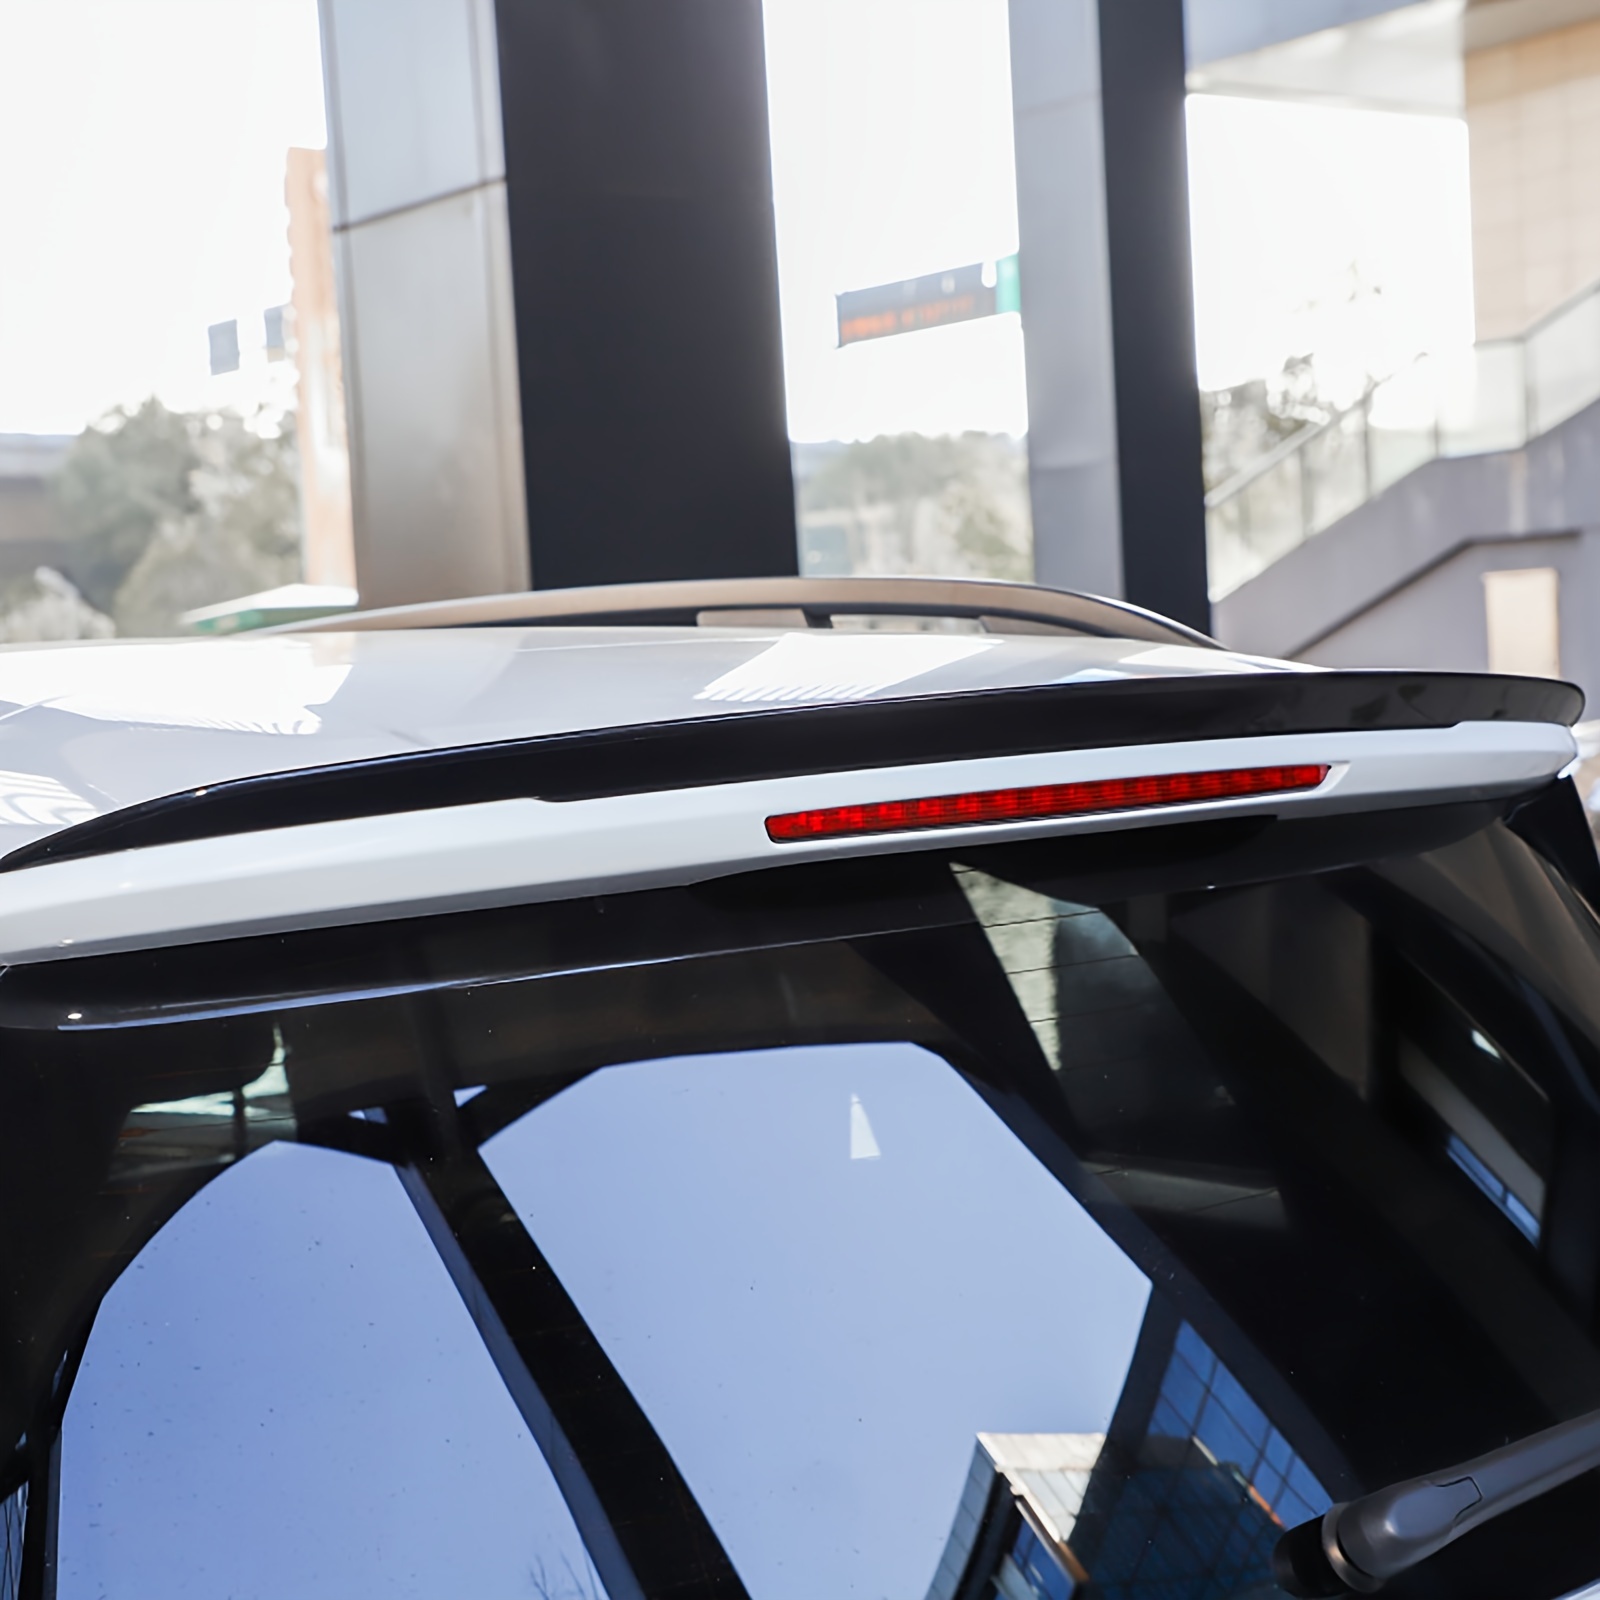 Garniture de couverture de panneau de console centrale de voiture pour  Mercedes Benz Classe C W205 C180l C200 C300 2015-2018 Abs Décoration  d'autocollant en fibre de carbone